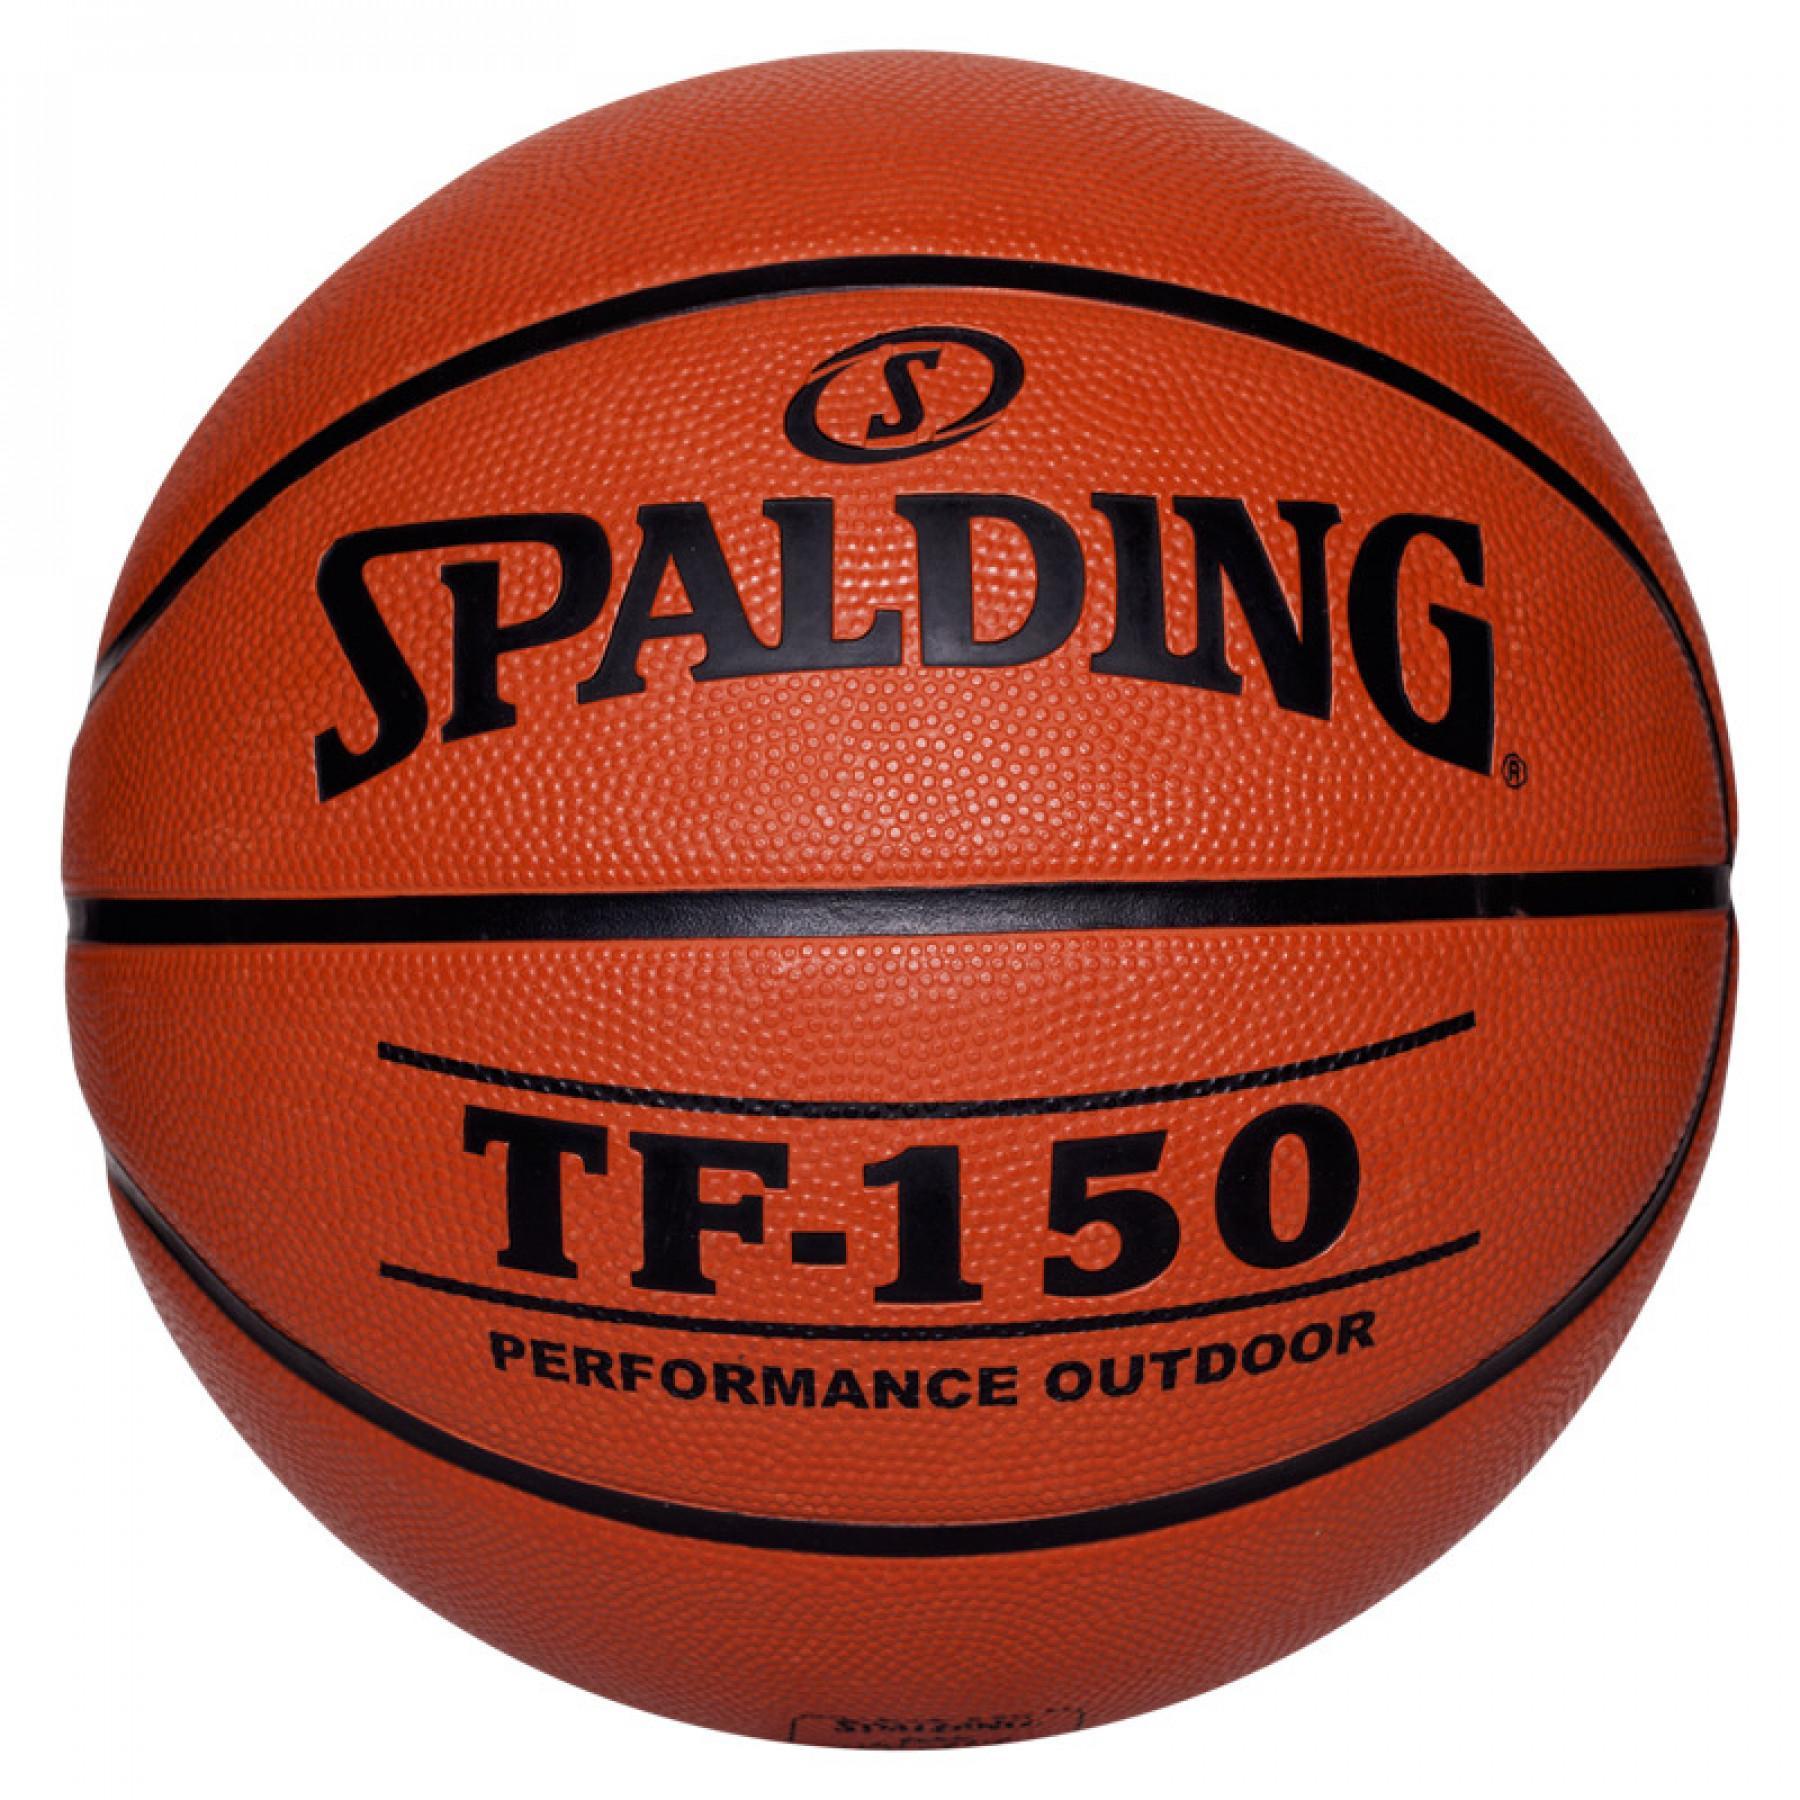 Balon Spalding Tf150 Outdoor (73-953z)